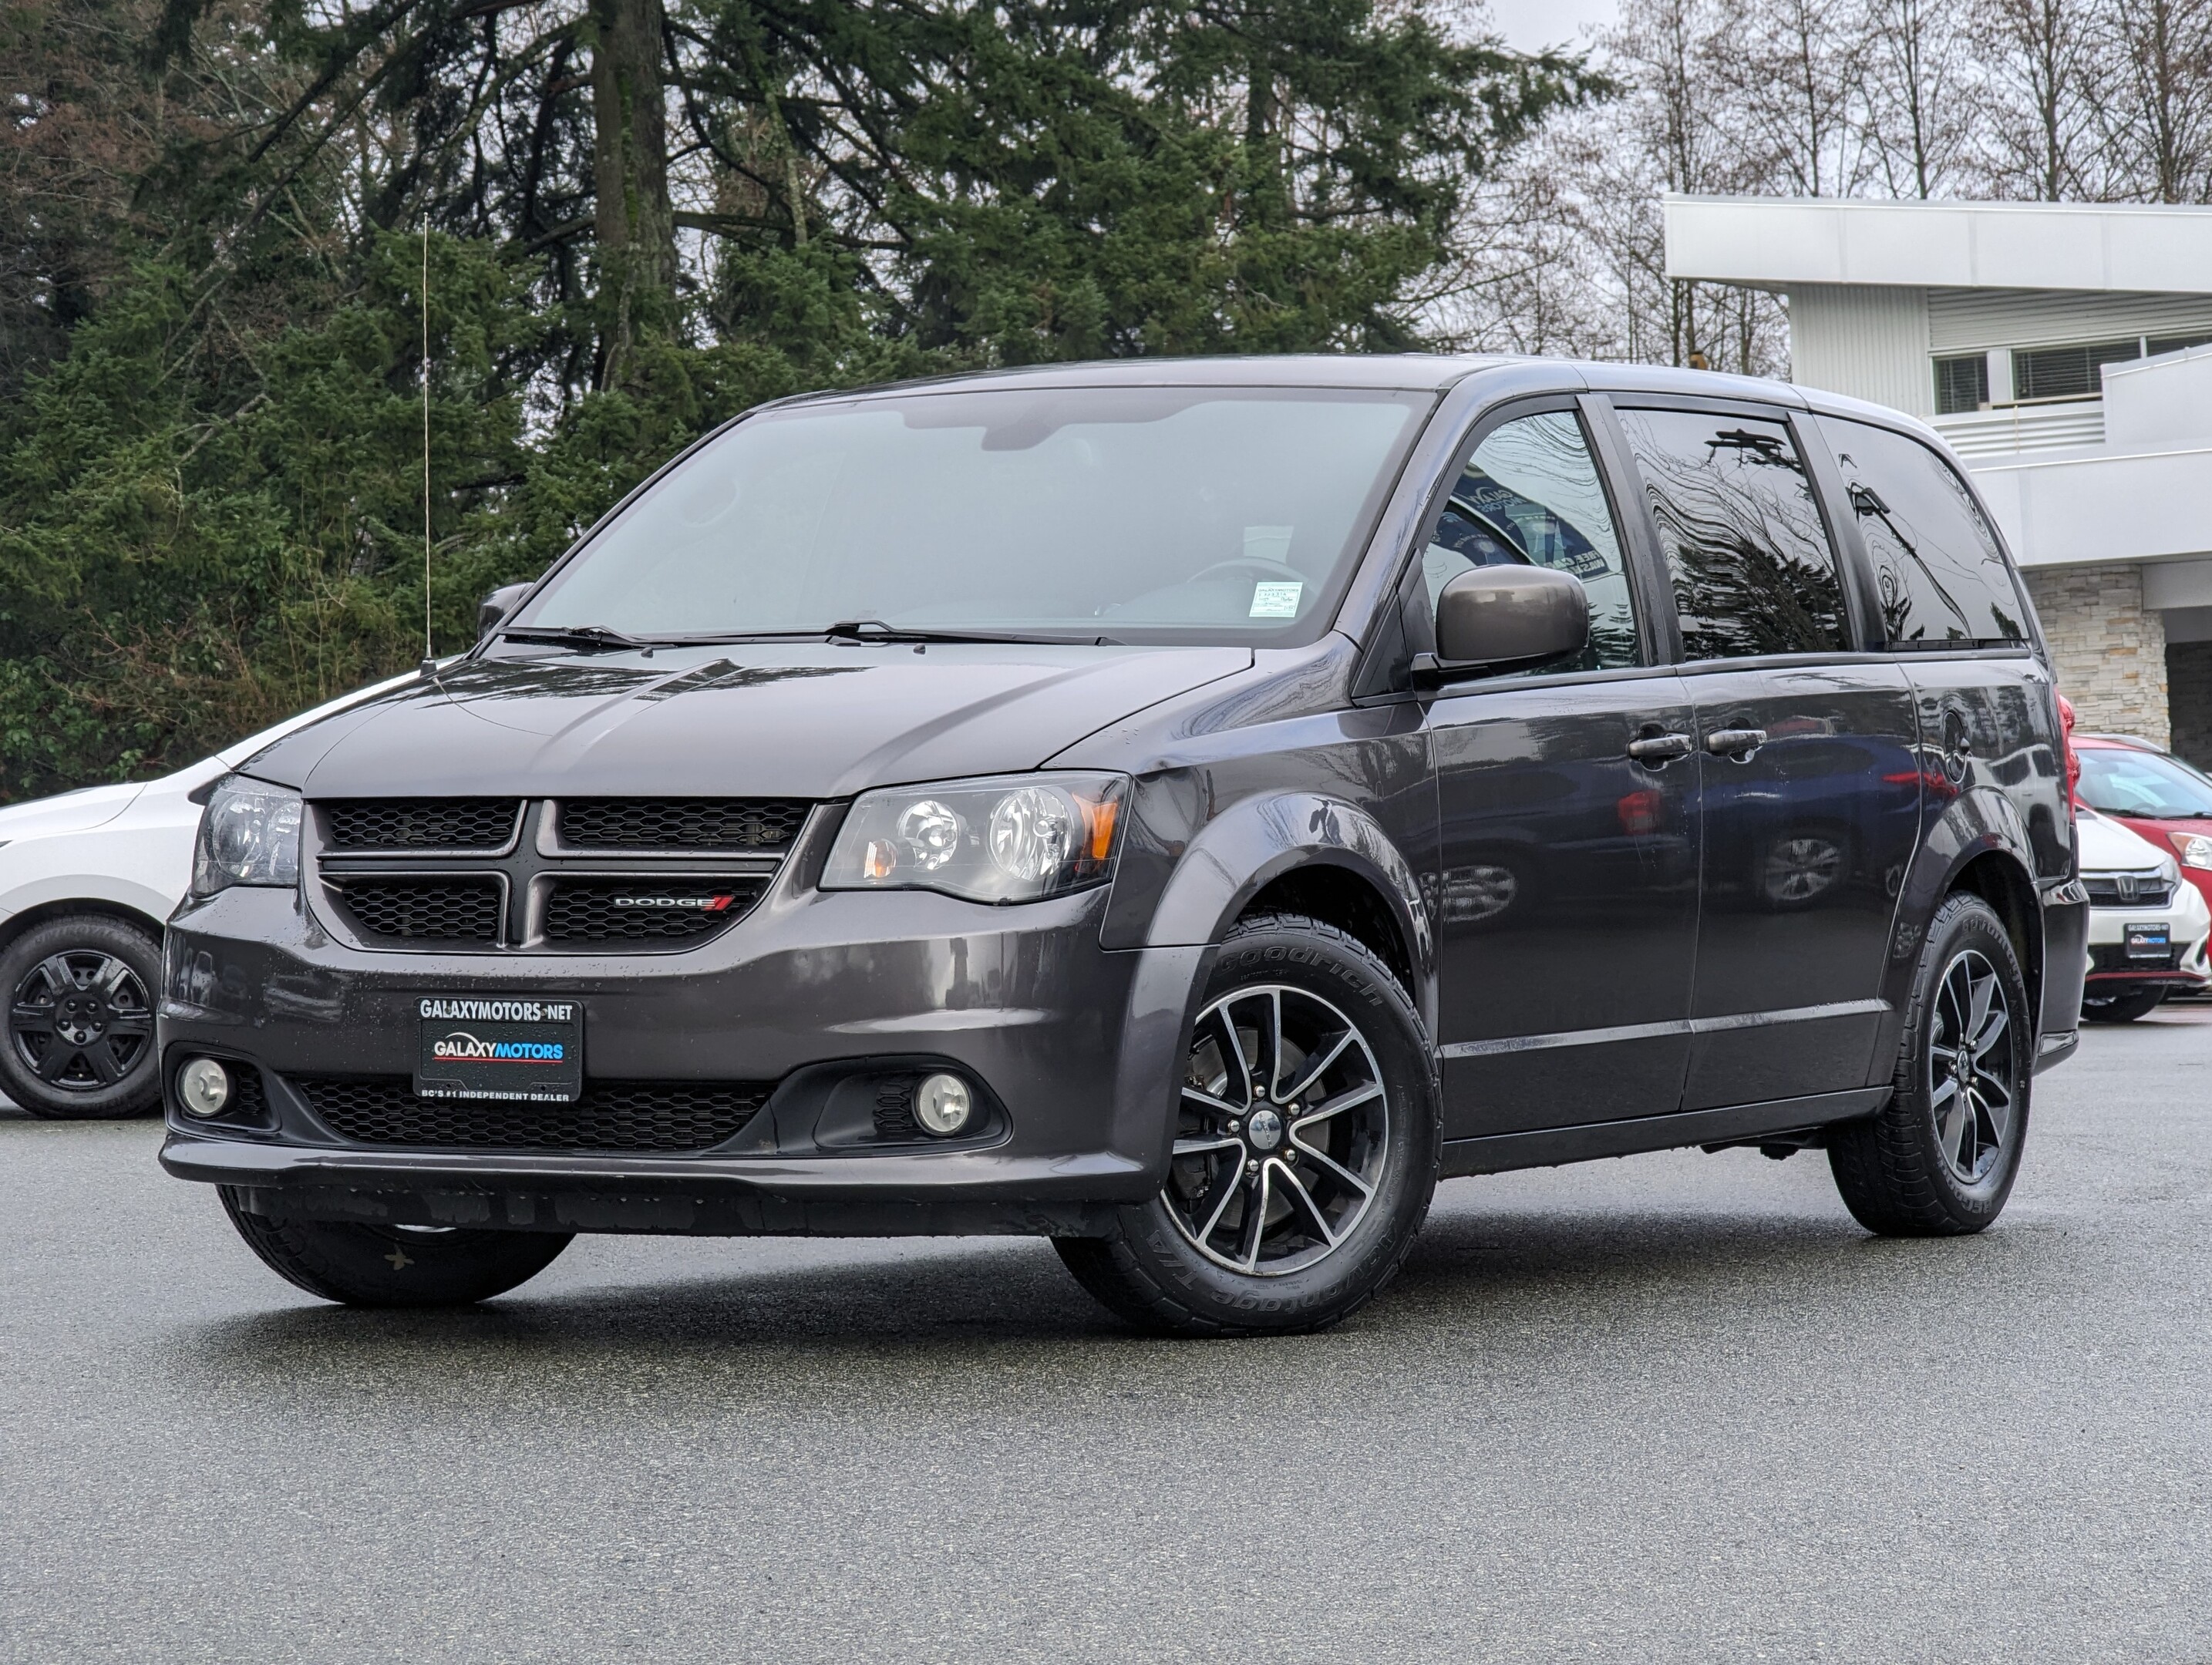 2019 Dodge Grand Caravan GT - Flex Fuel, Power Doors, Heated Seats